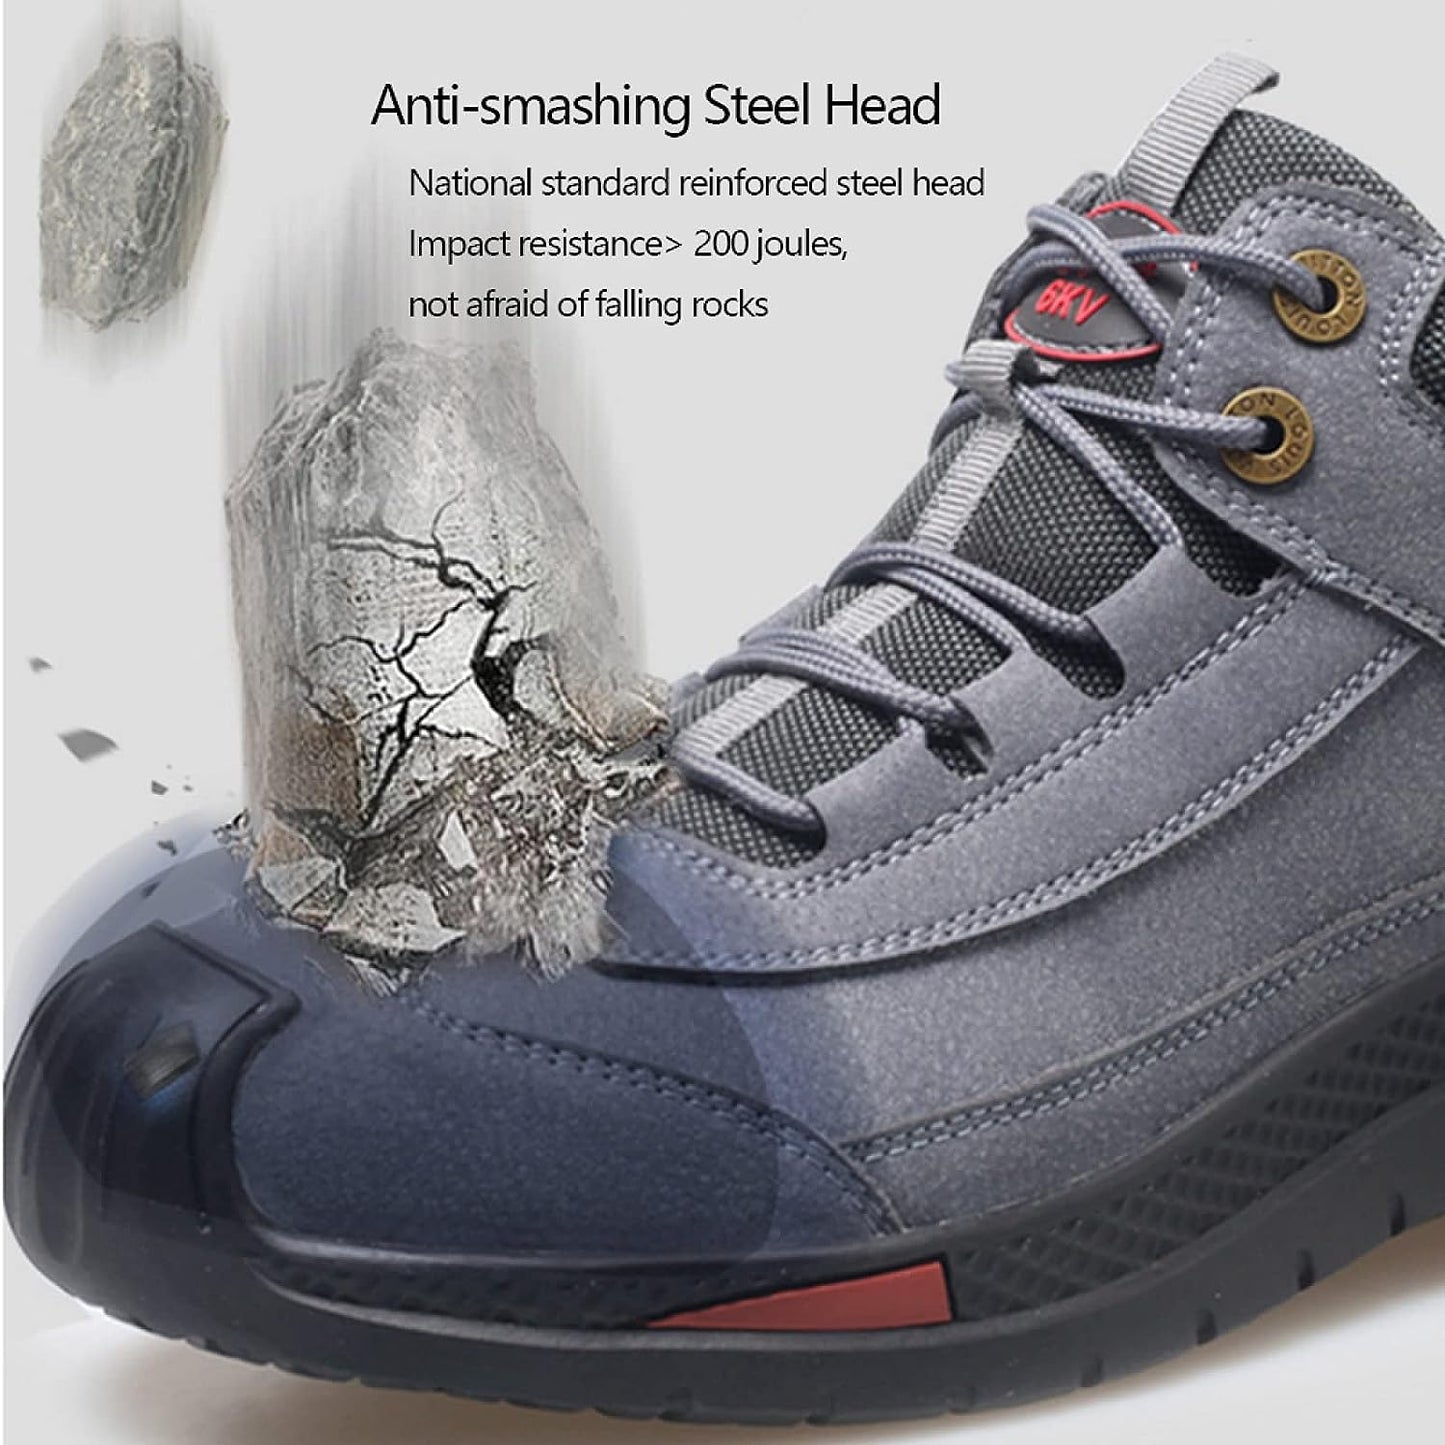 Arnauld | Chaussures Imperméables Avancées